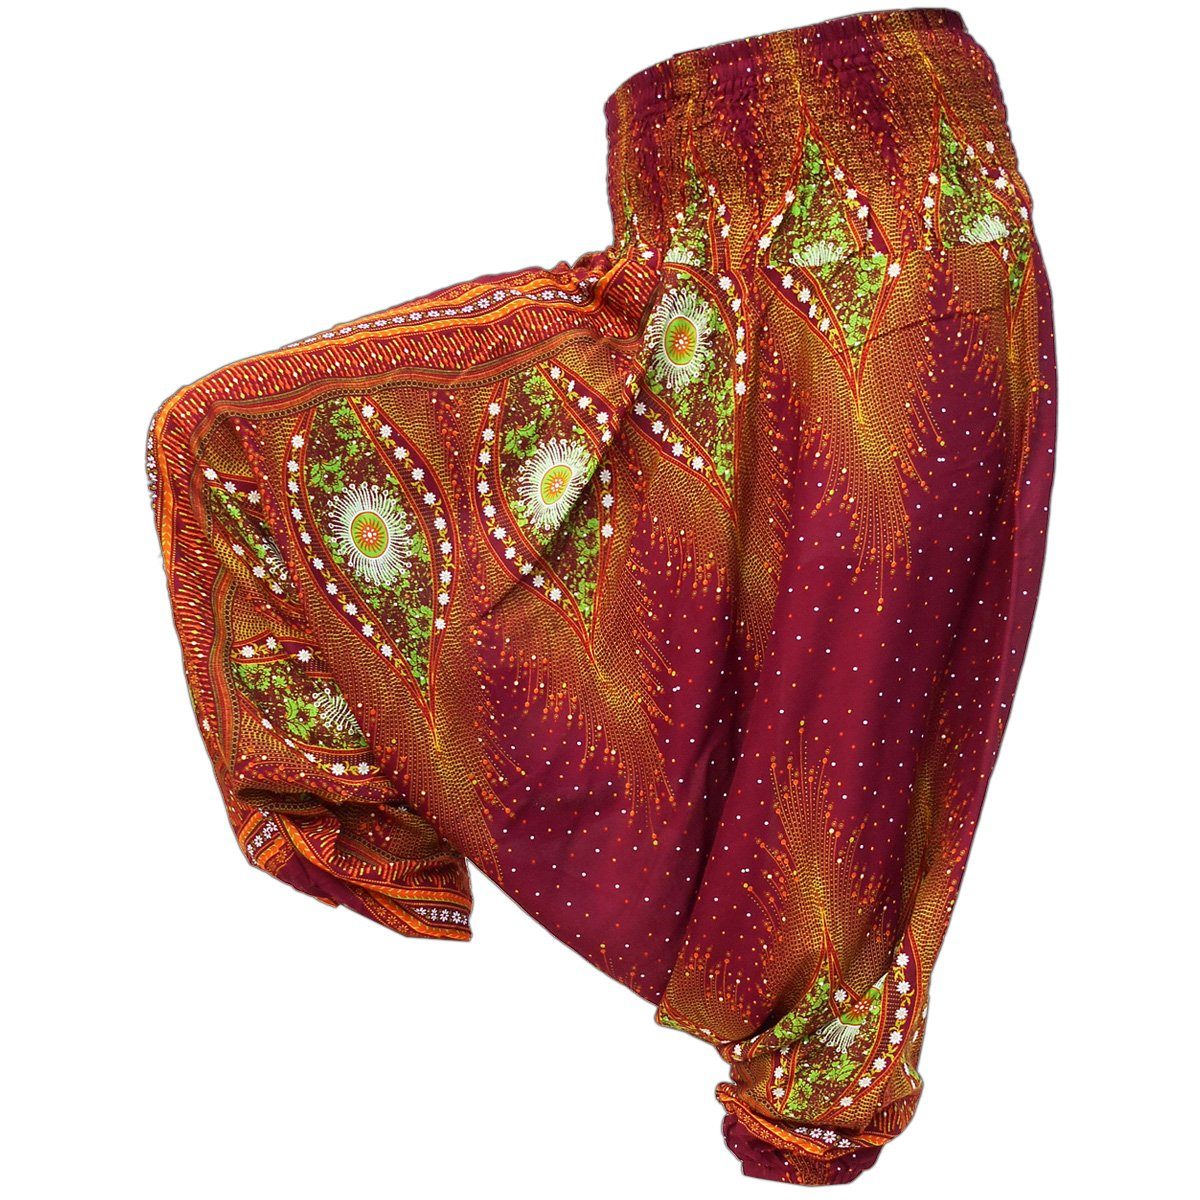 PANASIAM Stoffhose Aladinhose im schönen Peacock Design Haremshose aus 100% natürlicher Viskose auch als Overall tragbar Damen Pumphose bequeme Freizeithose V 16 | Weite Hosen